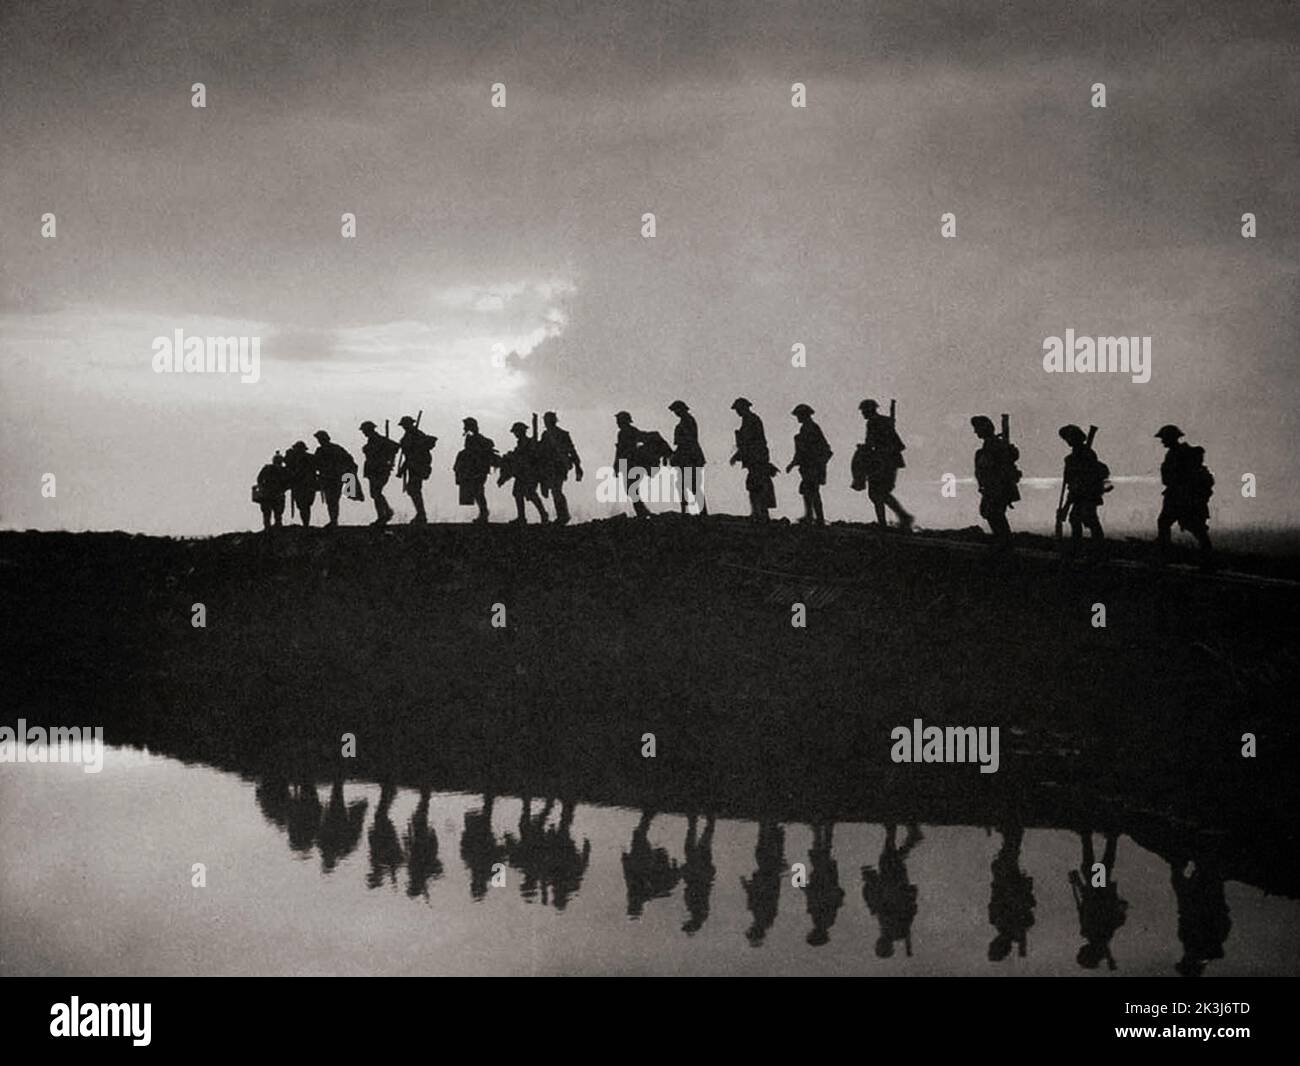 Los soldados se perfilaron contra el cielo marchando durante la tercera Batalla de Ypres en 1917, diseñada por Sir Douglas Haig para capturar la cresta de Passchendaele. Fotografía de Frank Hurley (1885 1962) Un fotógrafo australiano. Foto de stock